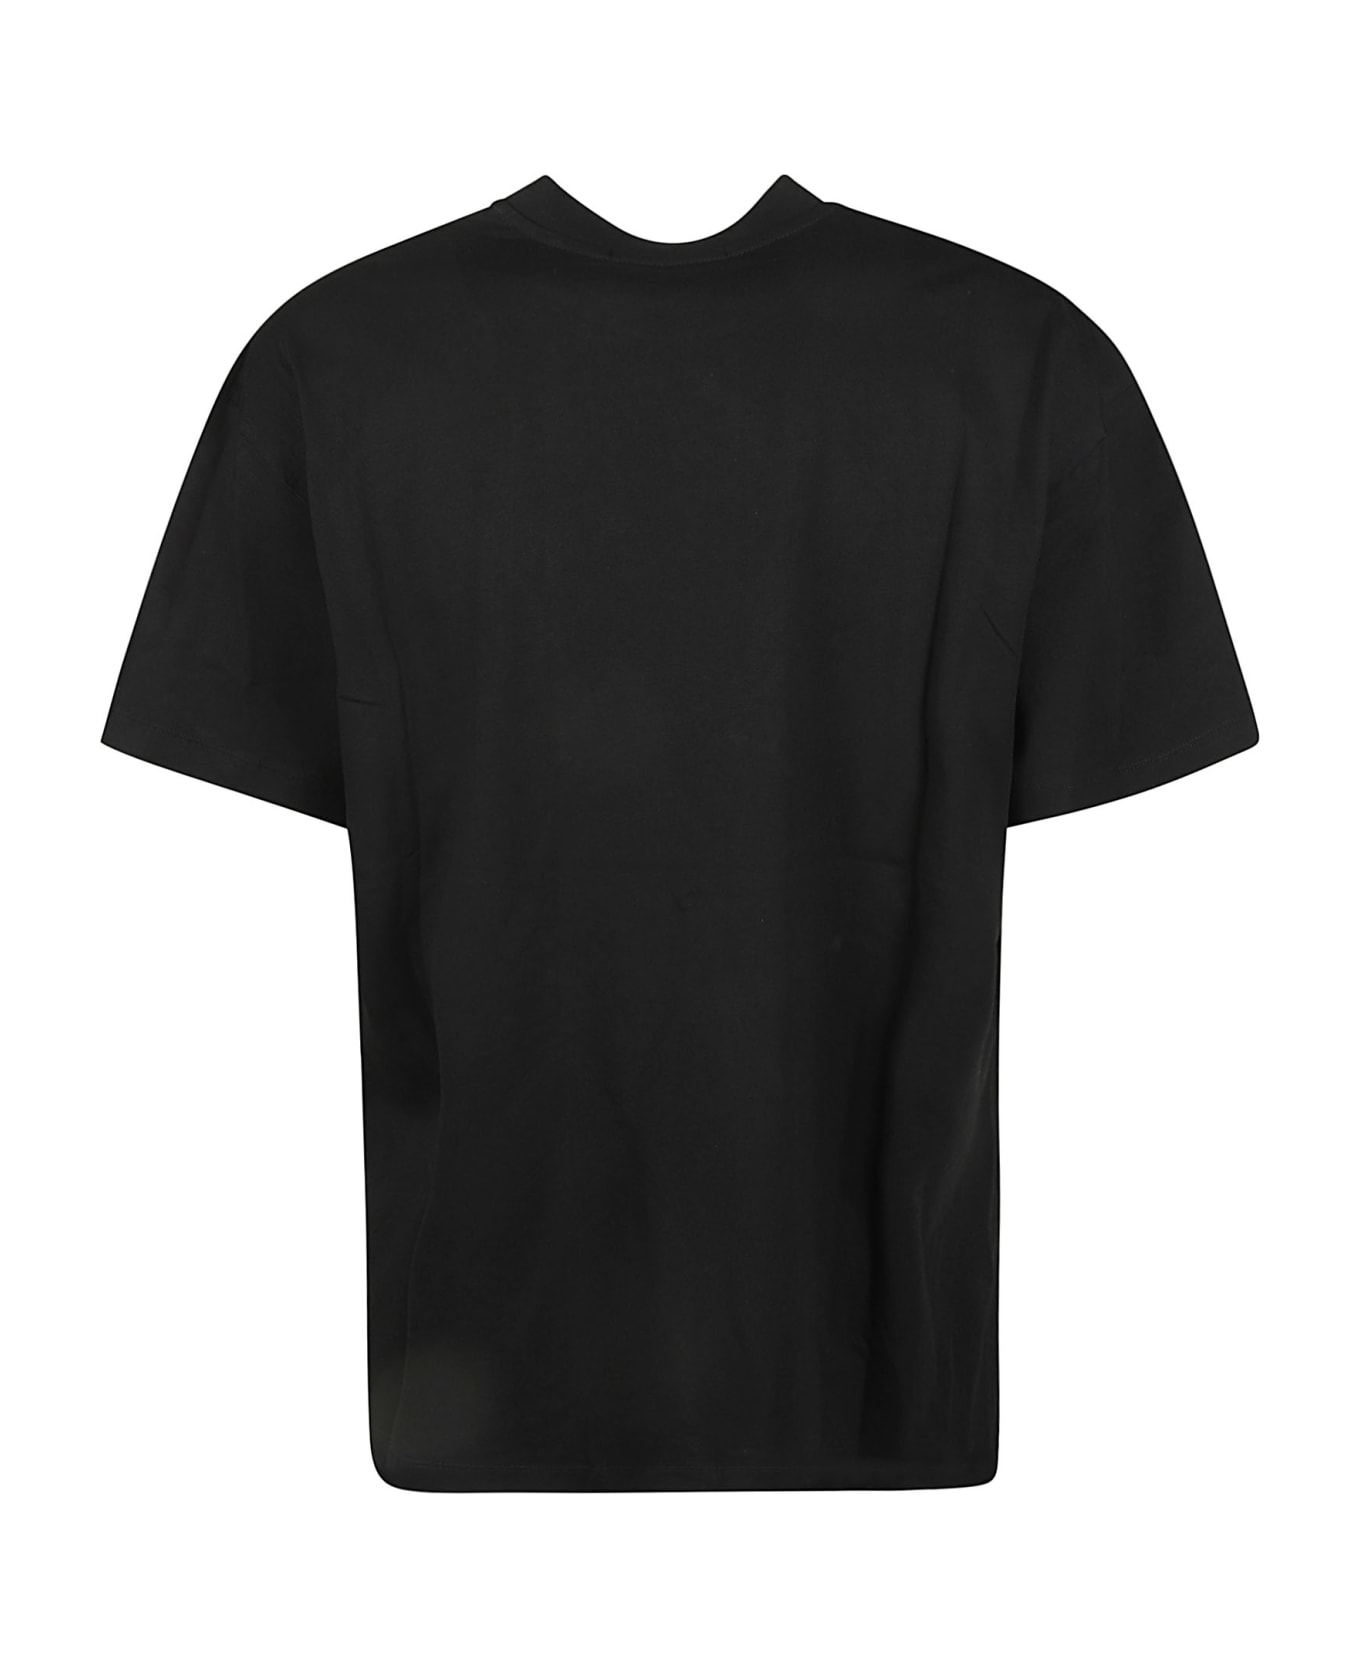 MSGM Logo Print T-shirt - Black シャツ